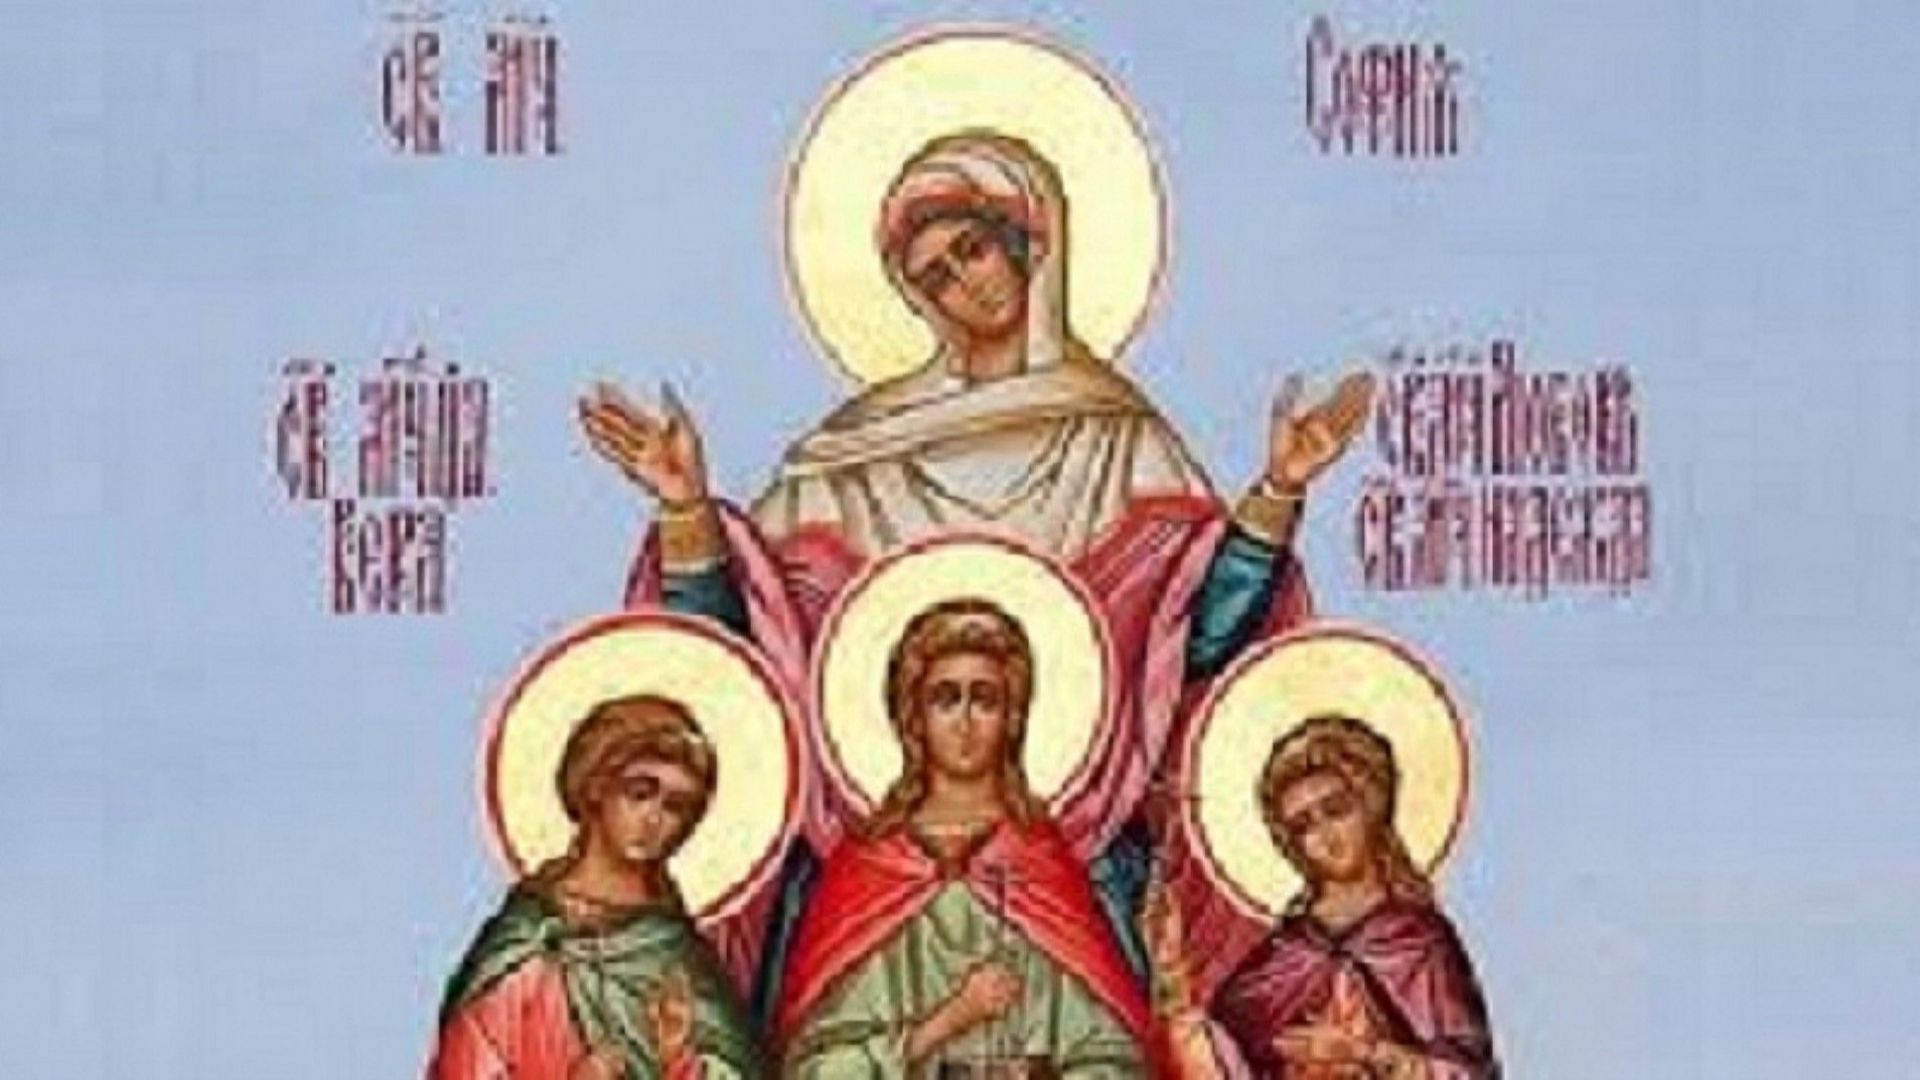  Почитаме паметта на Светите мъченици София, Вяра, Надежда и Любов